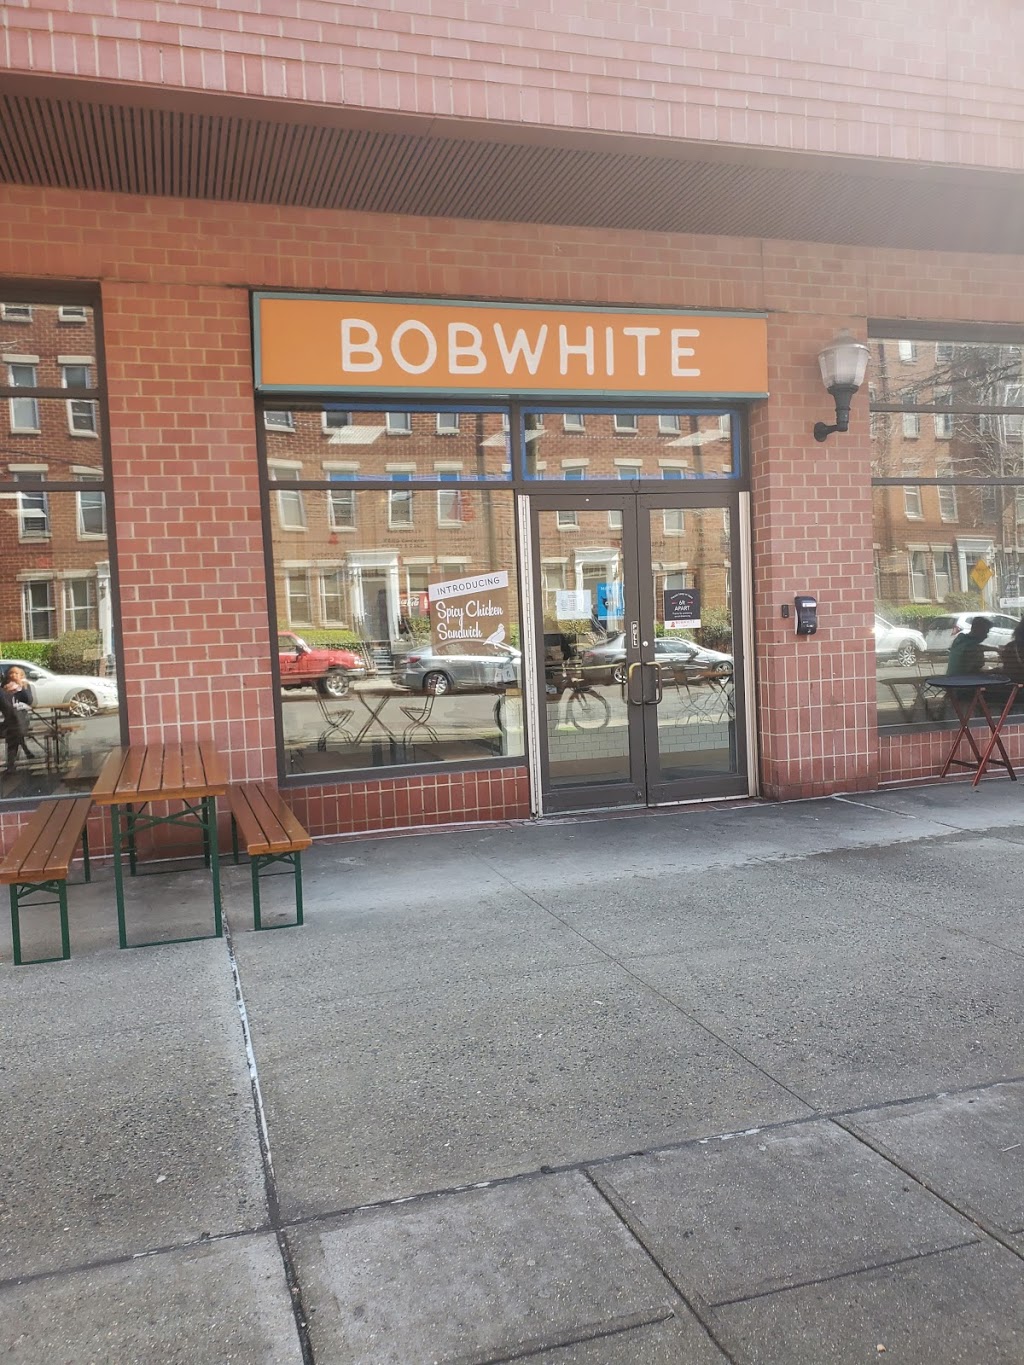 Bobwhite Counter | Photo 7 of 10 | Address: 150 Warren St, Jersey City, NJ 07302, USA | Phone: (201) 434-6267